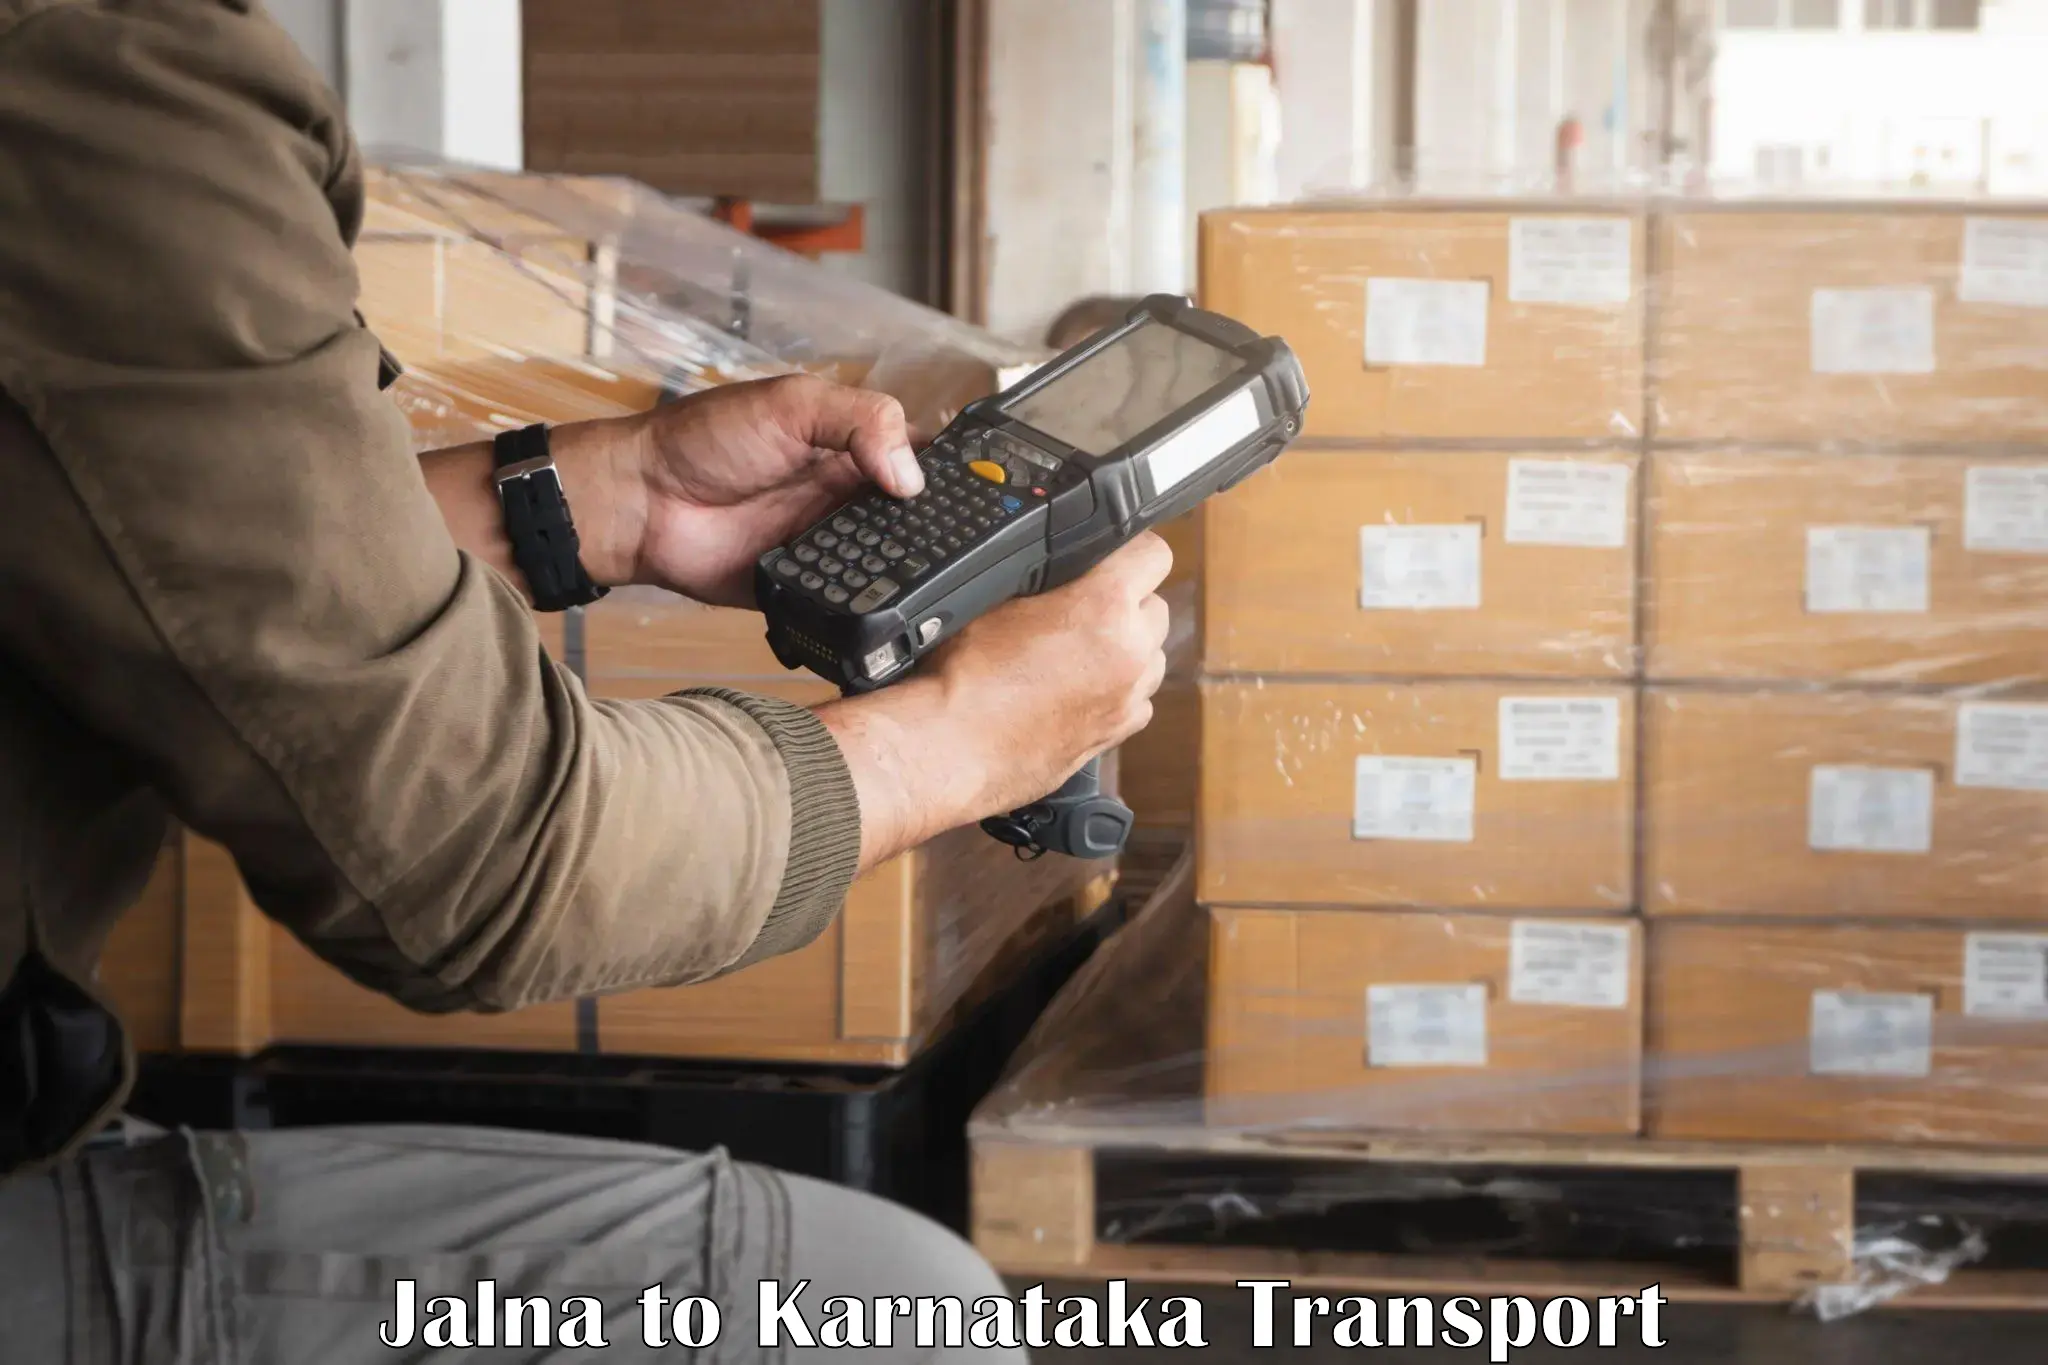 Daily parcel service transport Jalna to Kolar